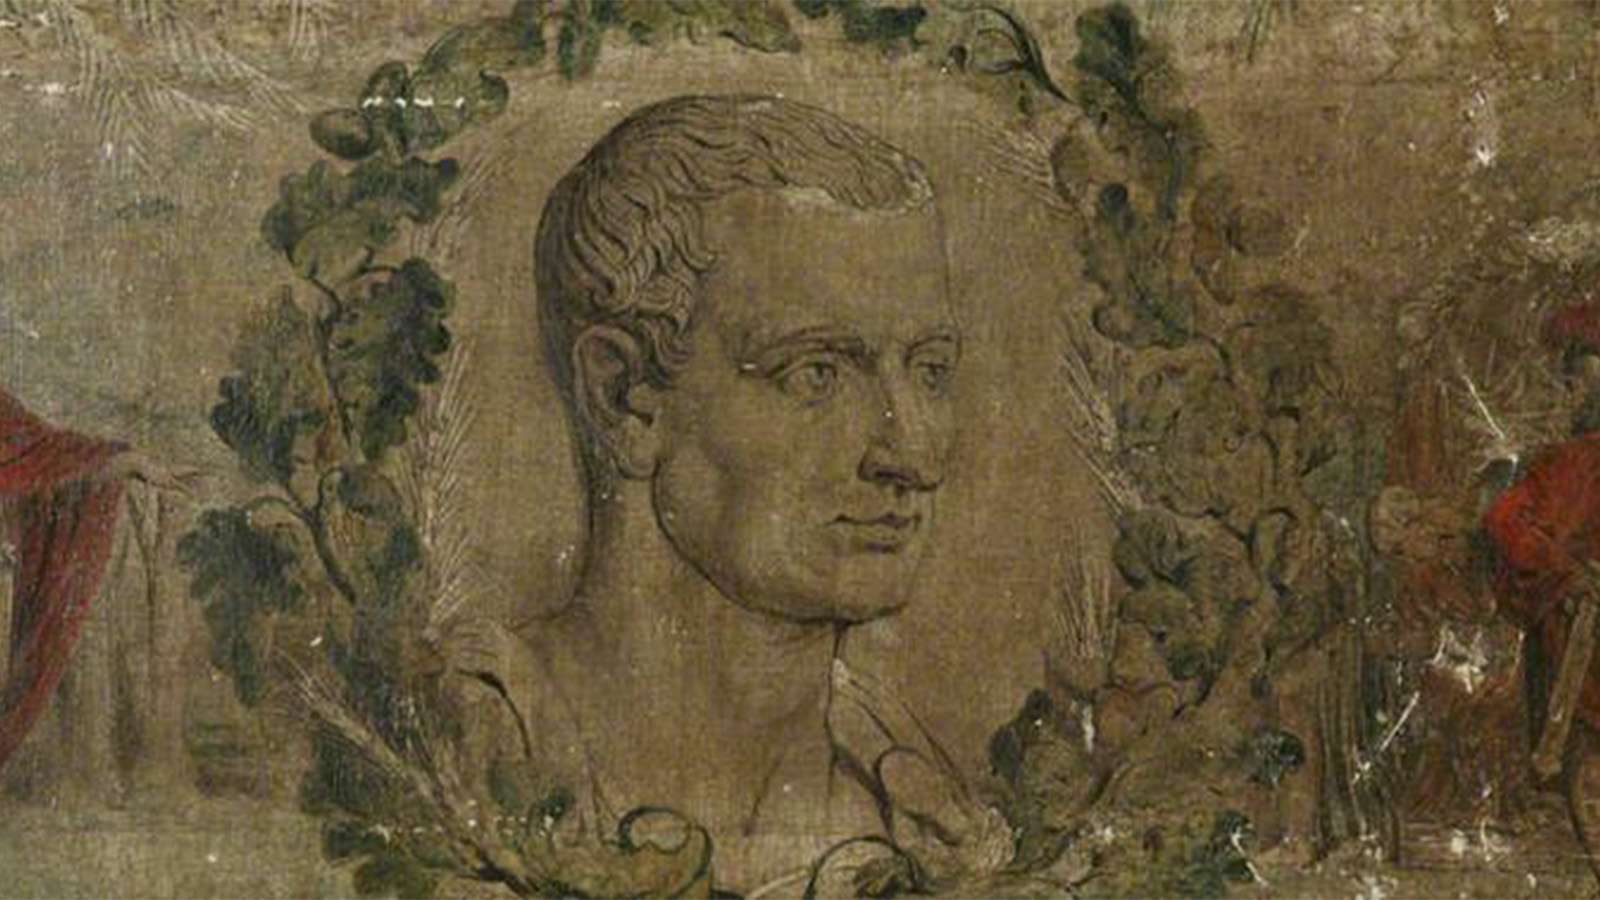 Grabado de Marco Tulio Cicerón de la Galería de Manchester City, William Blake, Public domain, via Wikimedia Commons